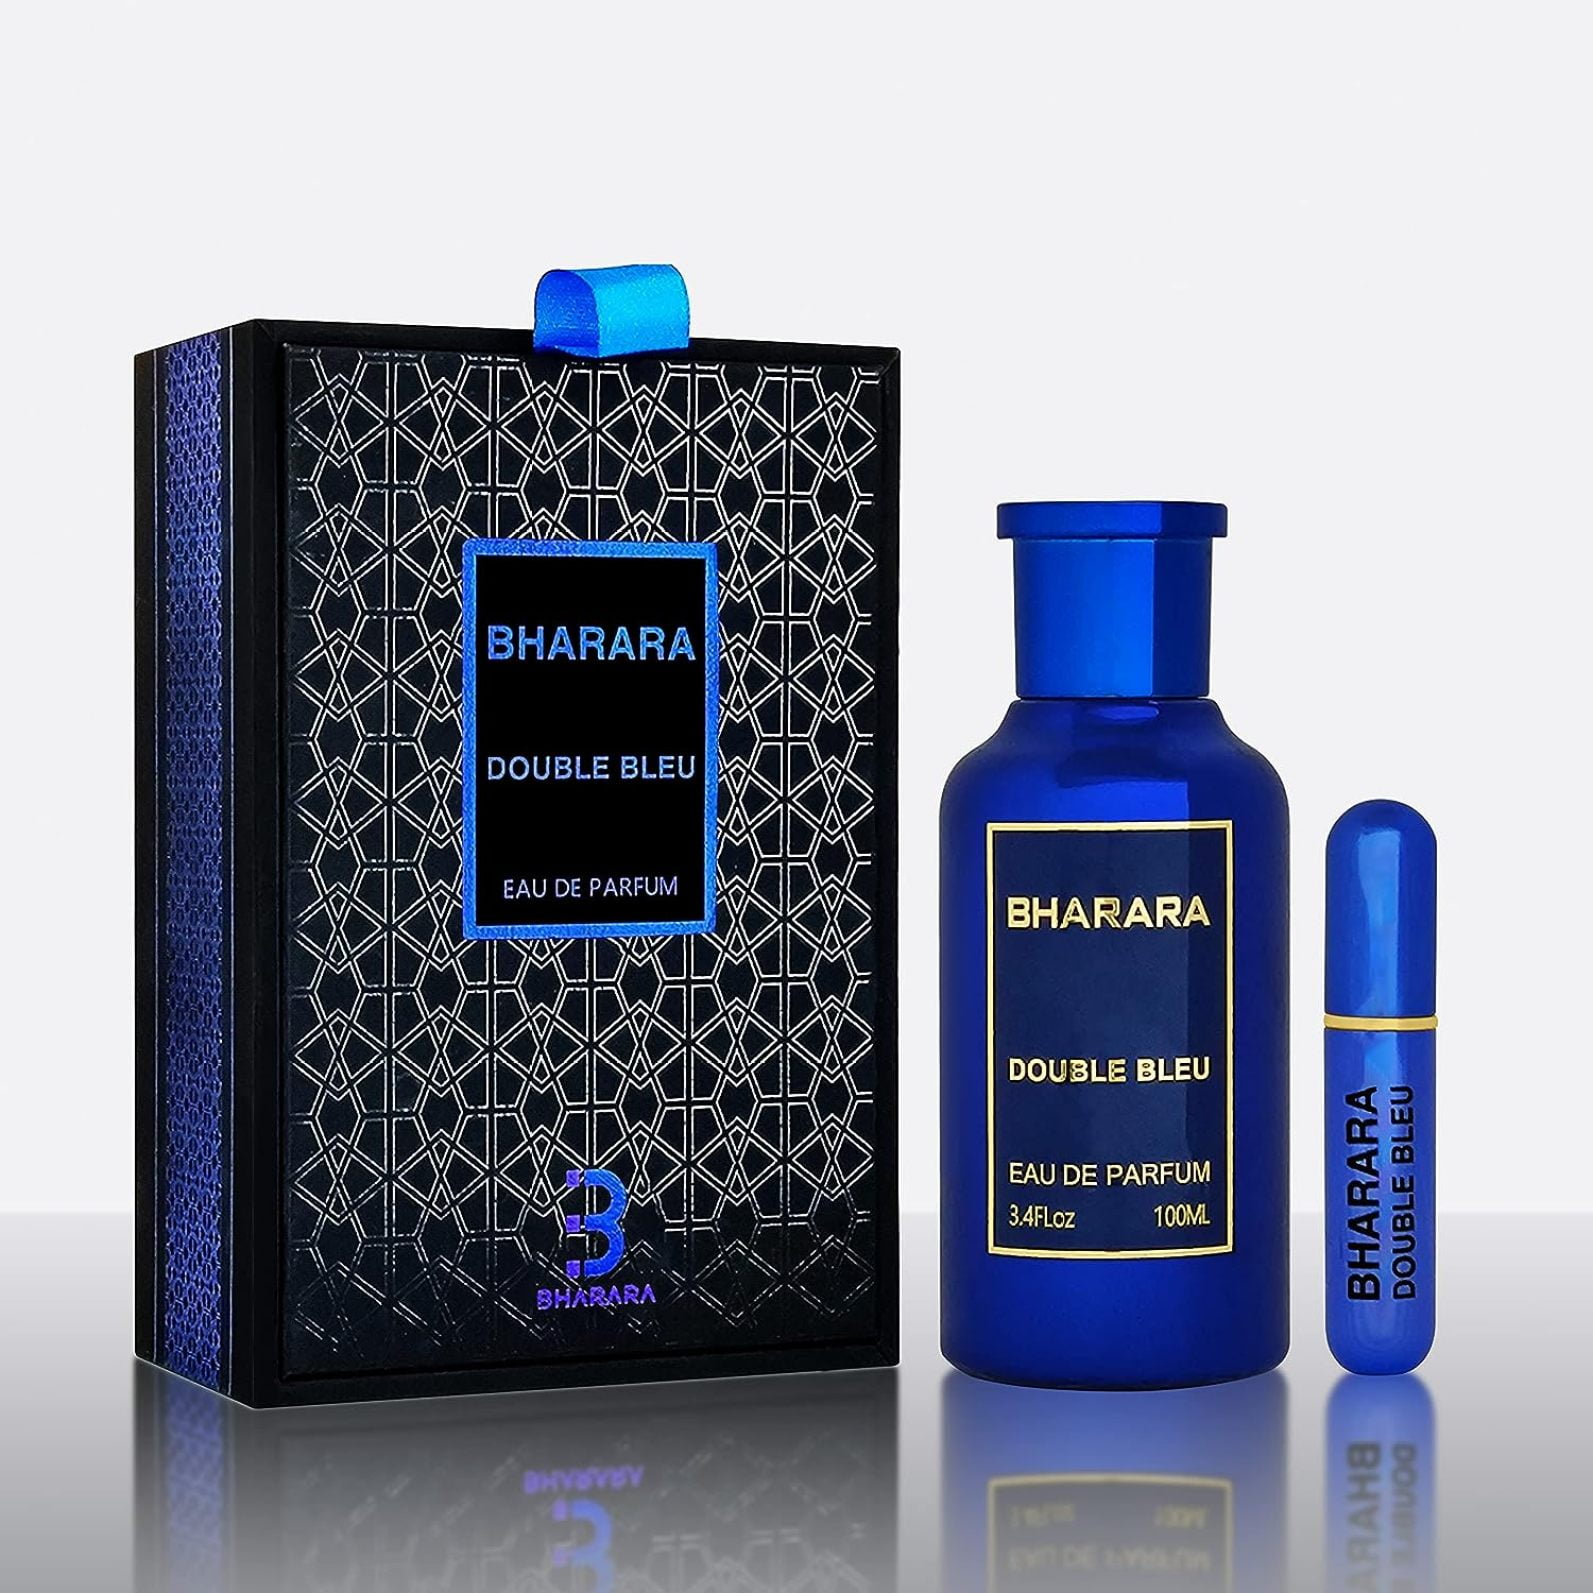 Bharara Double Bleu Pour Homme Eau de Parfum For Men 100ml/3.4oz Spray,  NEW!!!